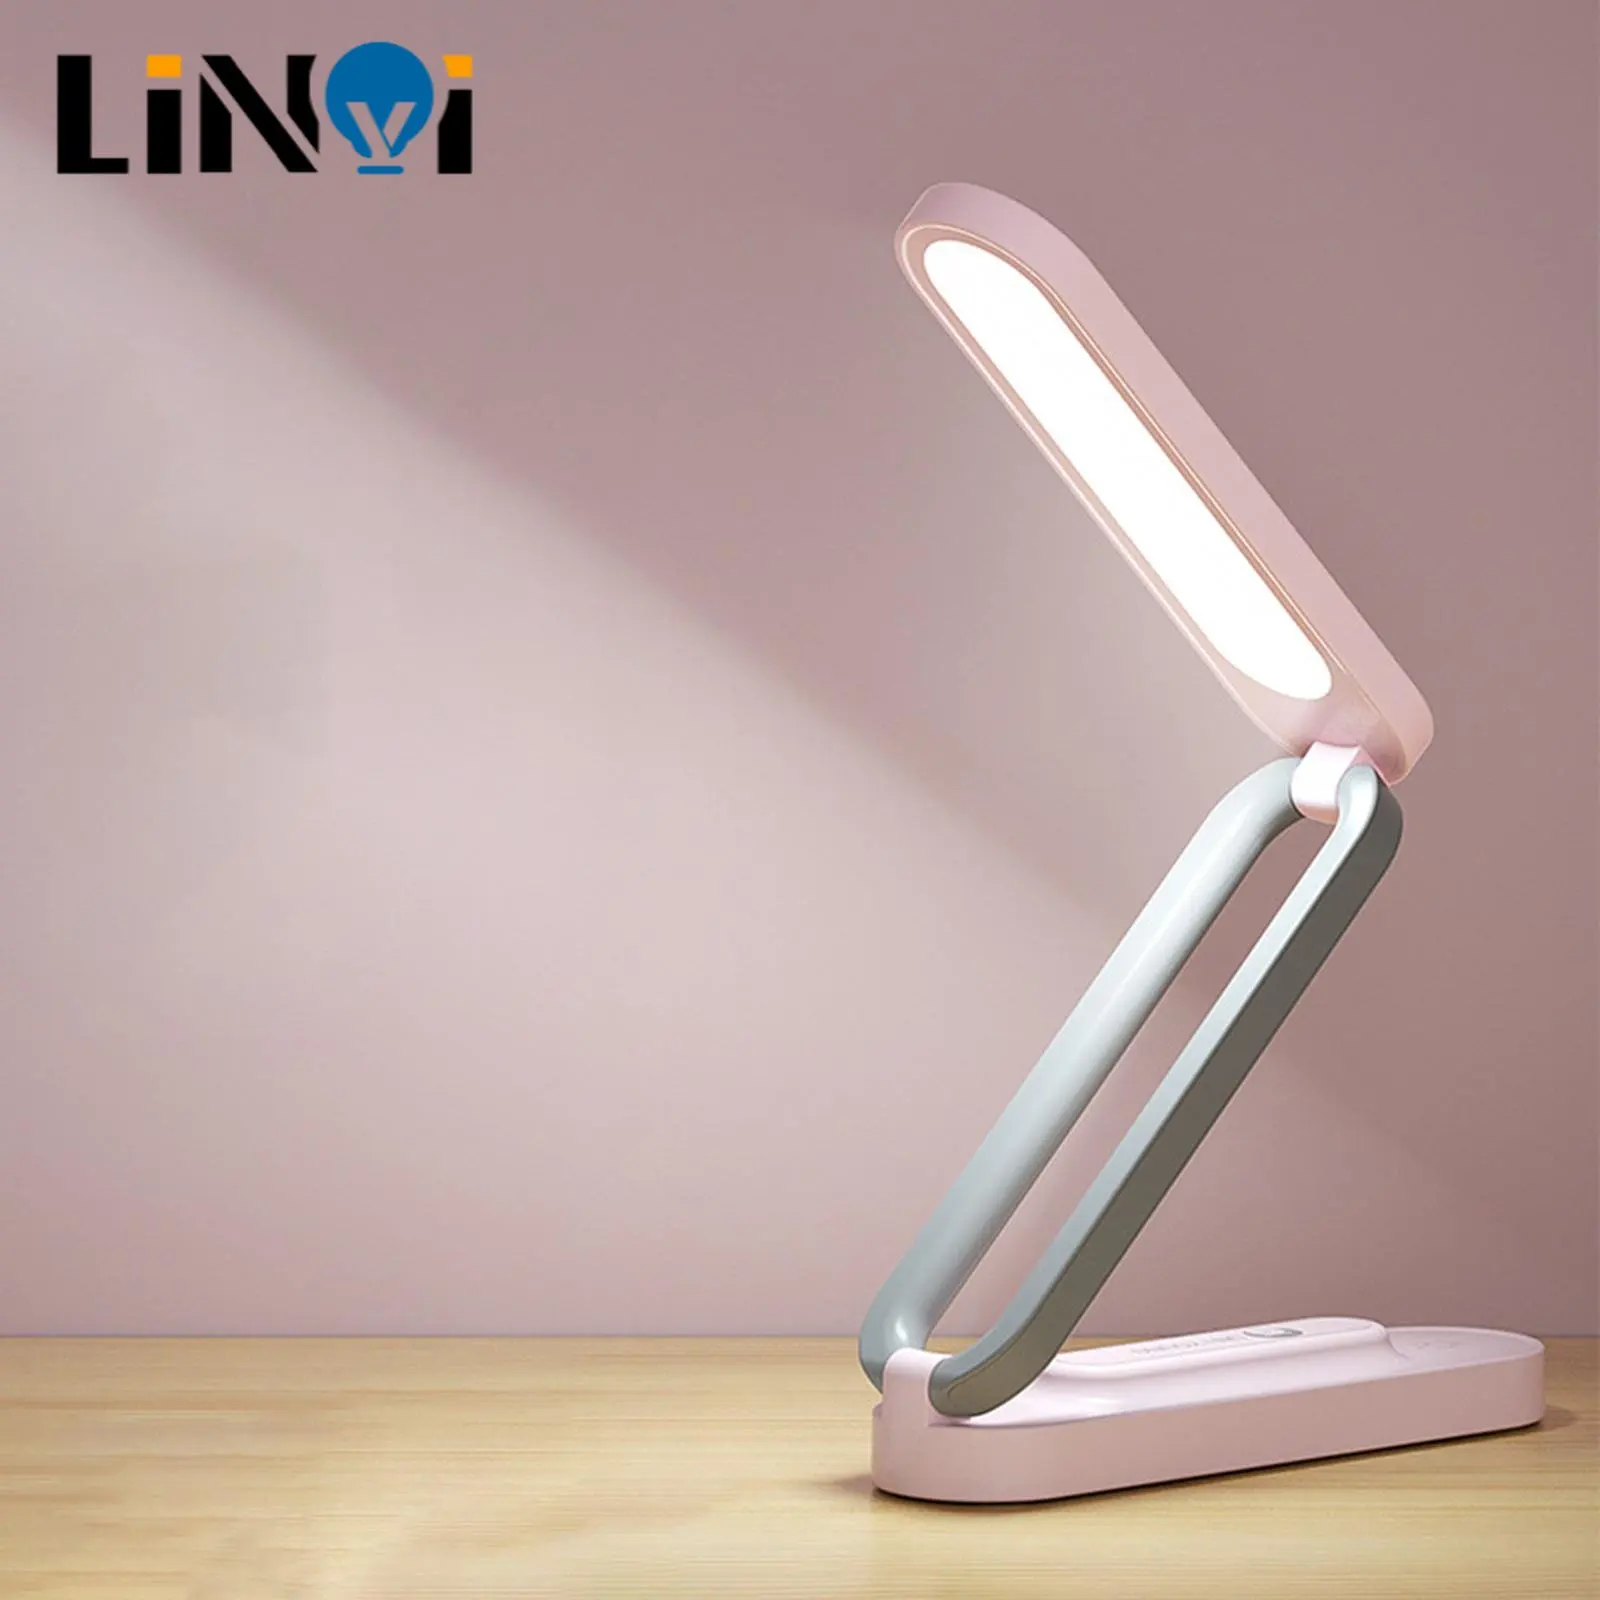 Alumiini Taitto-Pöytä, Lamppu, Korkea Laatu Desk Valo Ei Blue-Ray-Silmien Suojaus Led USB-Latausta, Lukeminen Valo, Pieni Pöytä Lamppu - 4